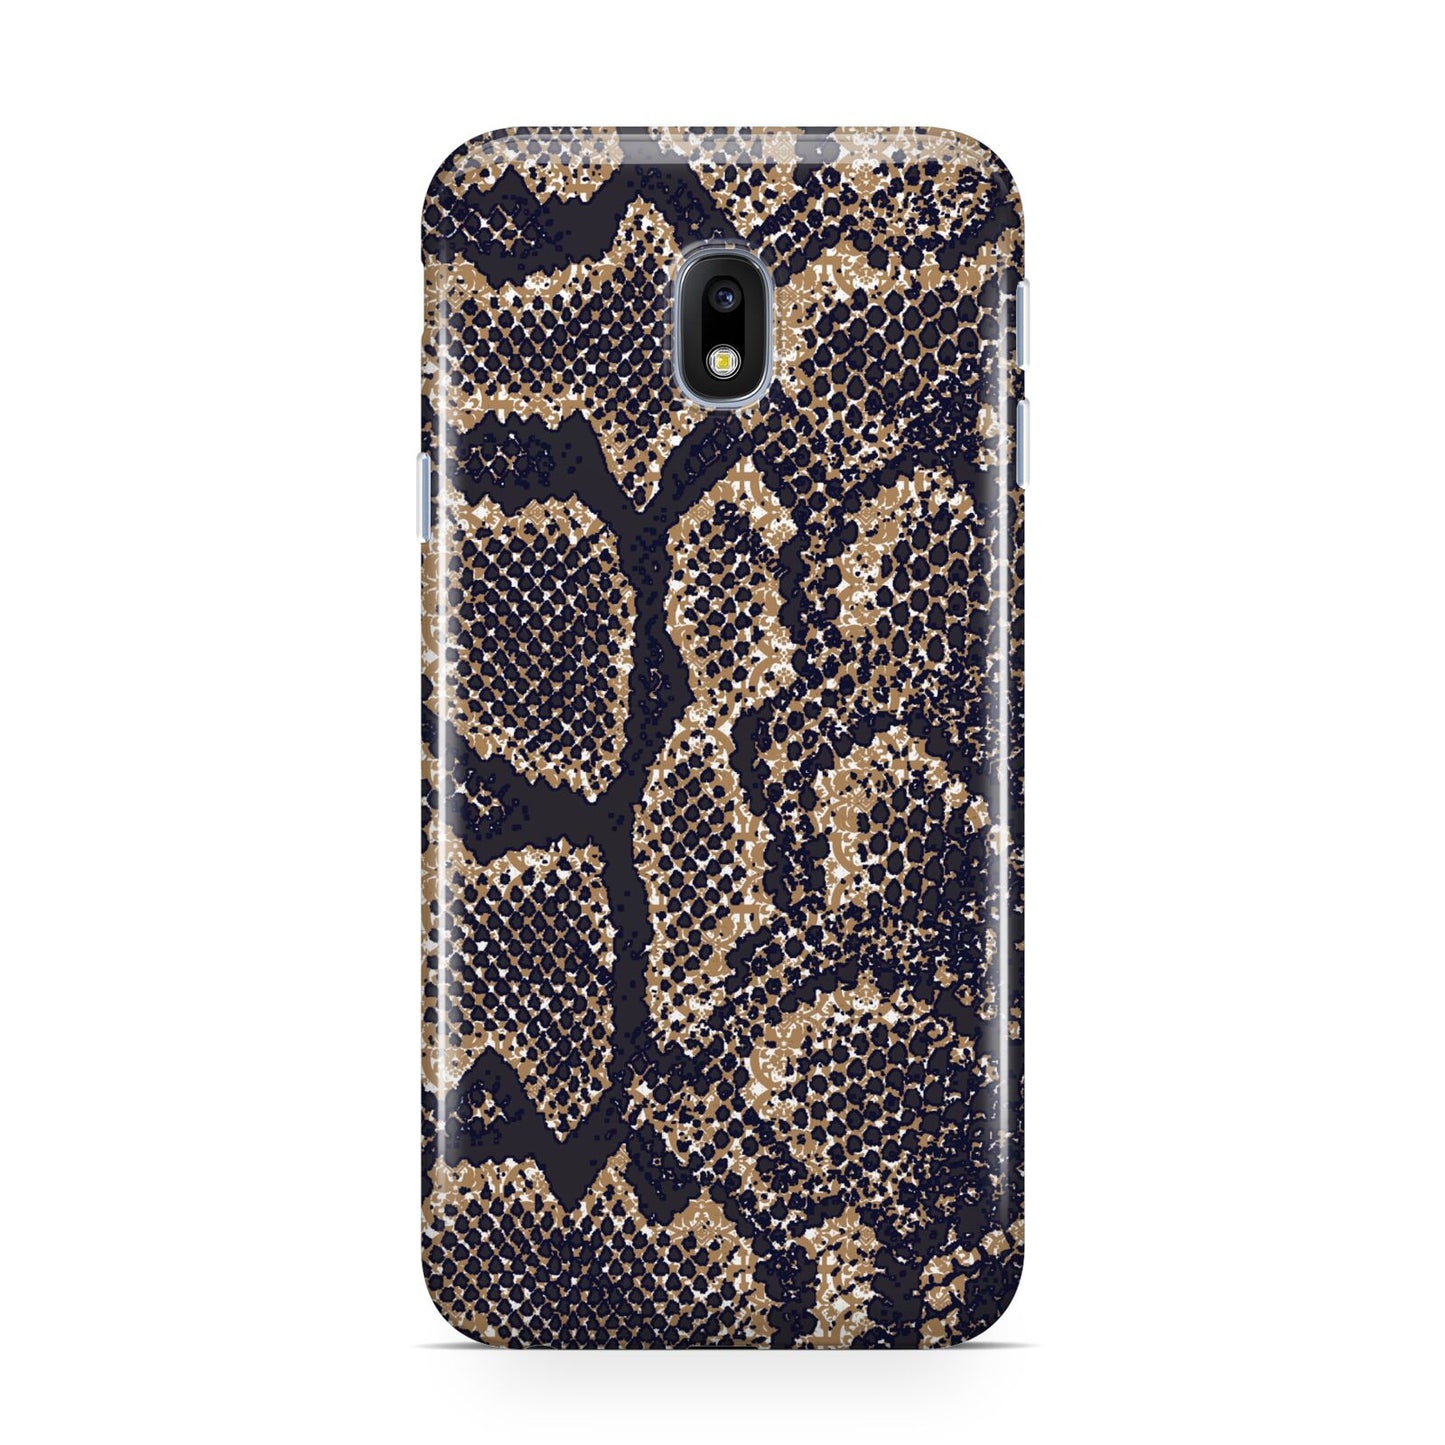 Brown Snakeskin Samsung Galaxy J3 2017 Case